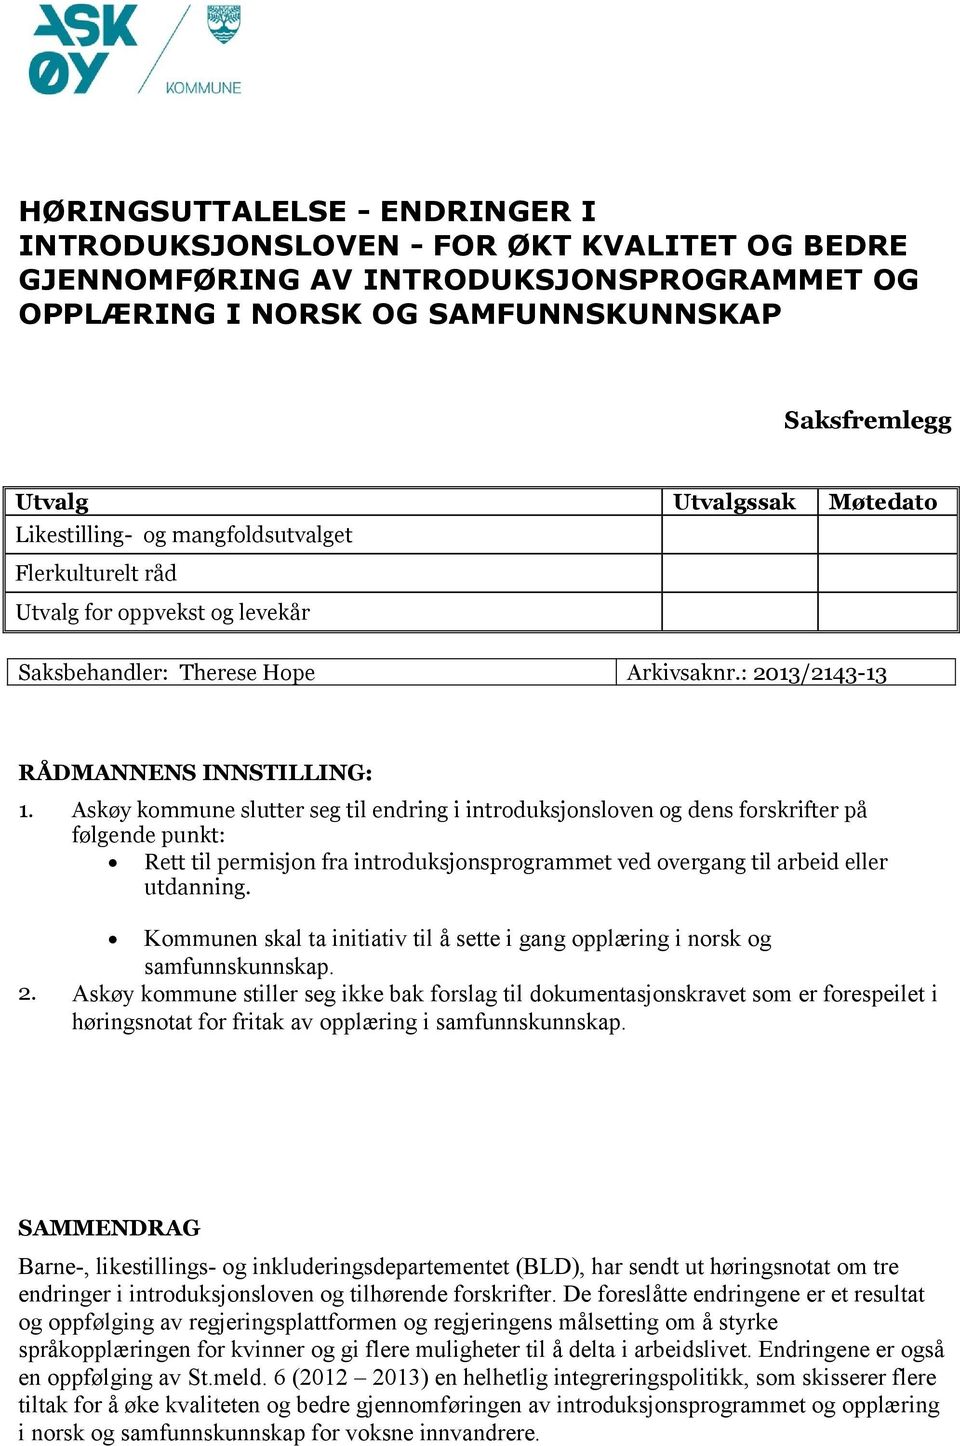 Askøy kommune slutter seg til endring i introduksjonsloven og dens forskrifter på følgende punkt: Rett til permisjon fra introduksjonsprogrammet ved overgang til arbeid eller utdanning.